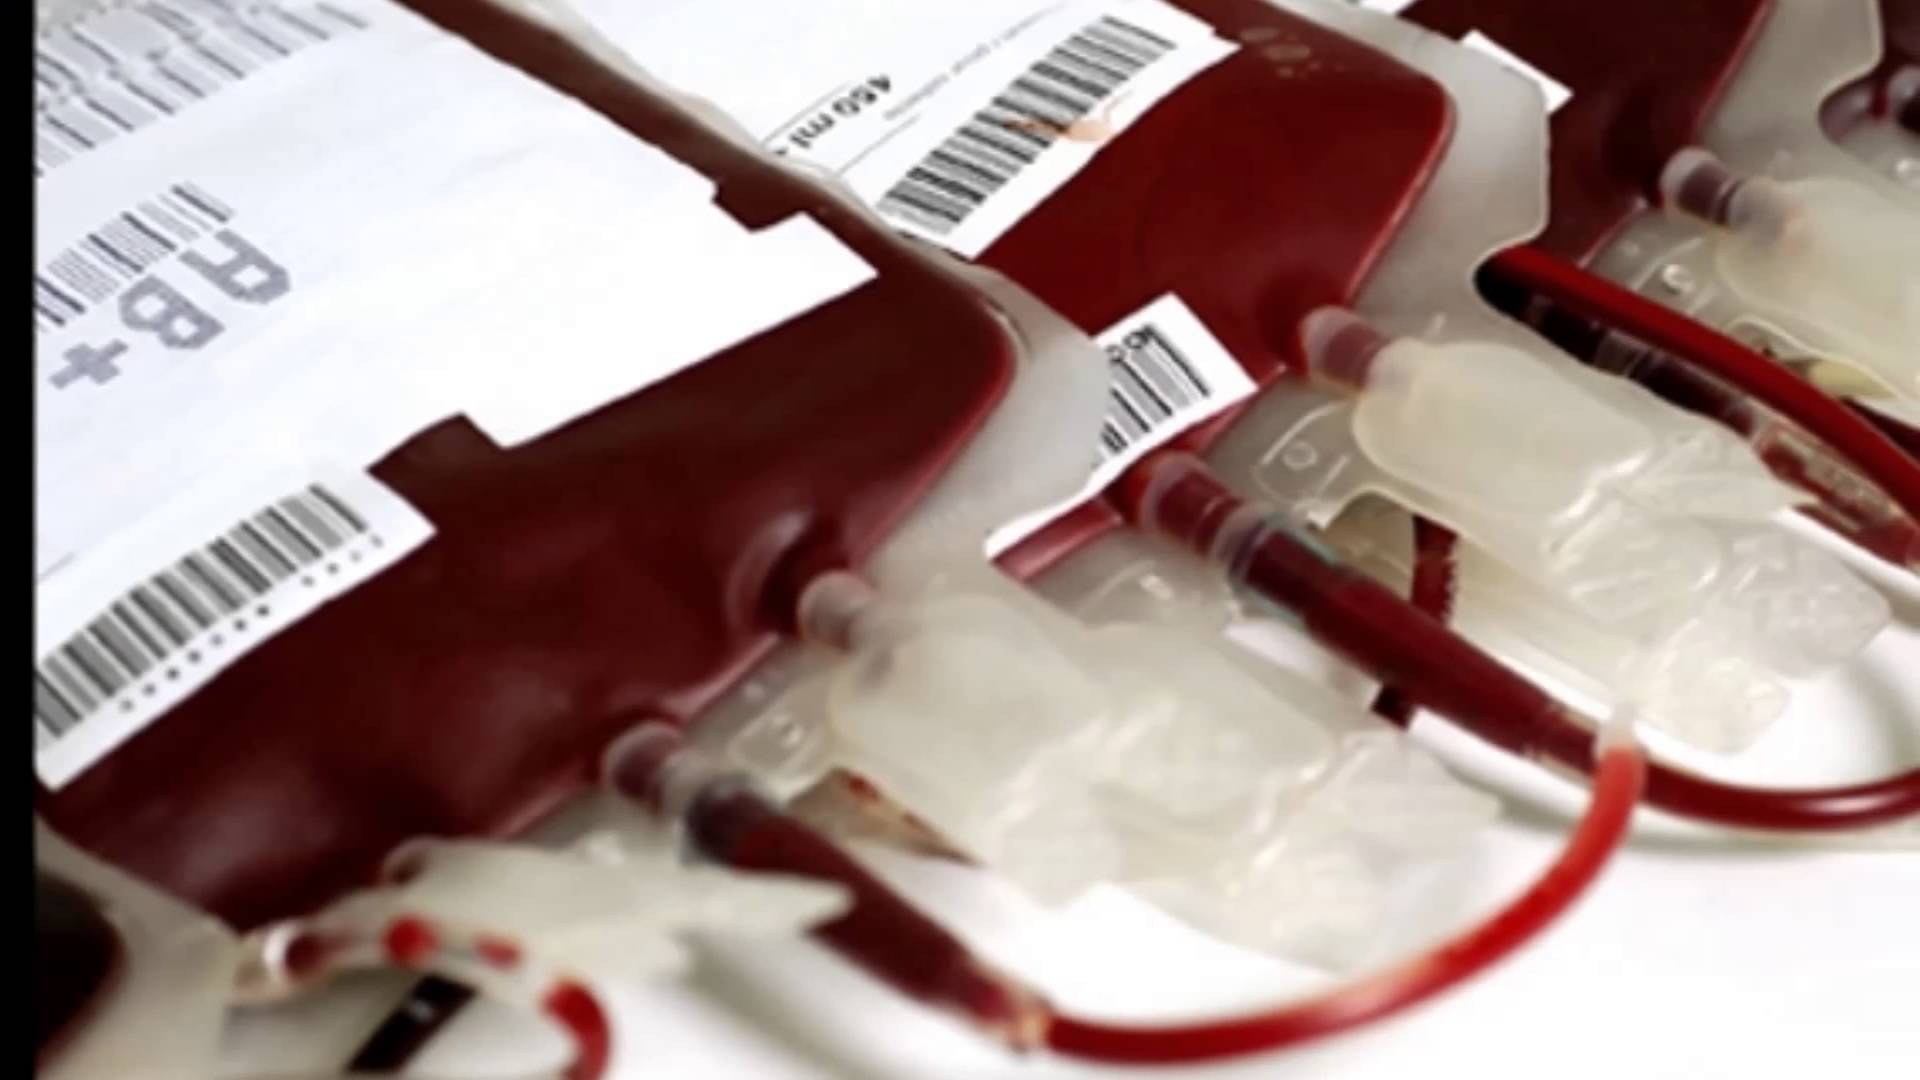 CCSS saldrá los domingos en busca de donadores de sangre para atender demandas en hospitales